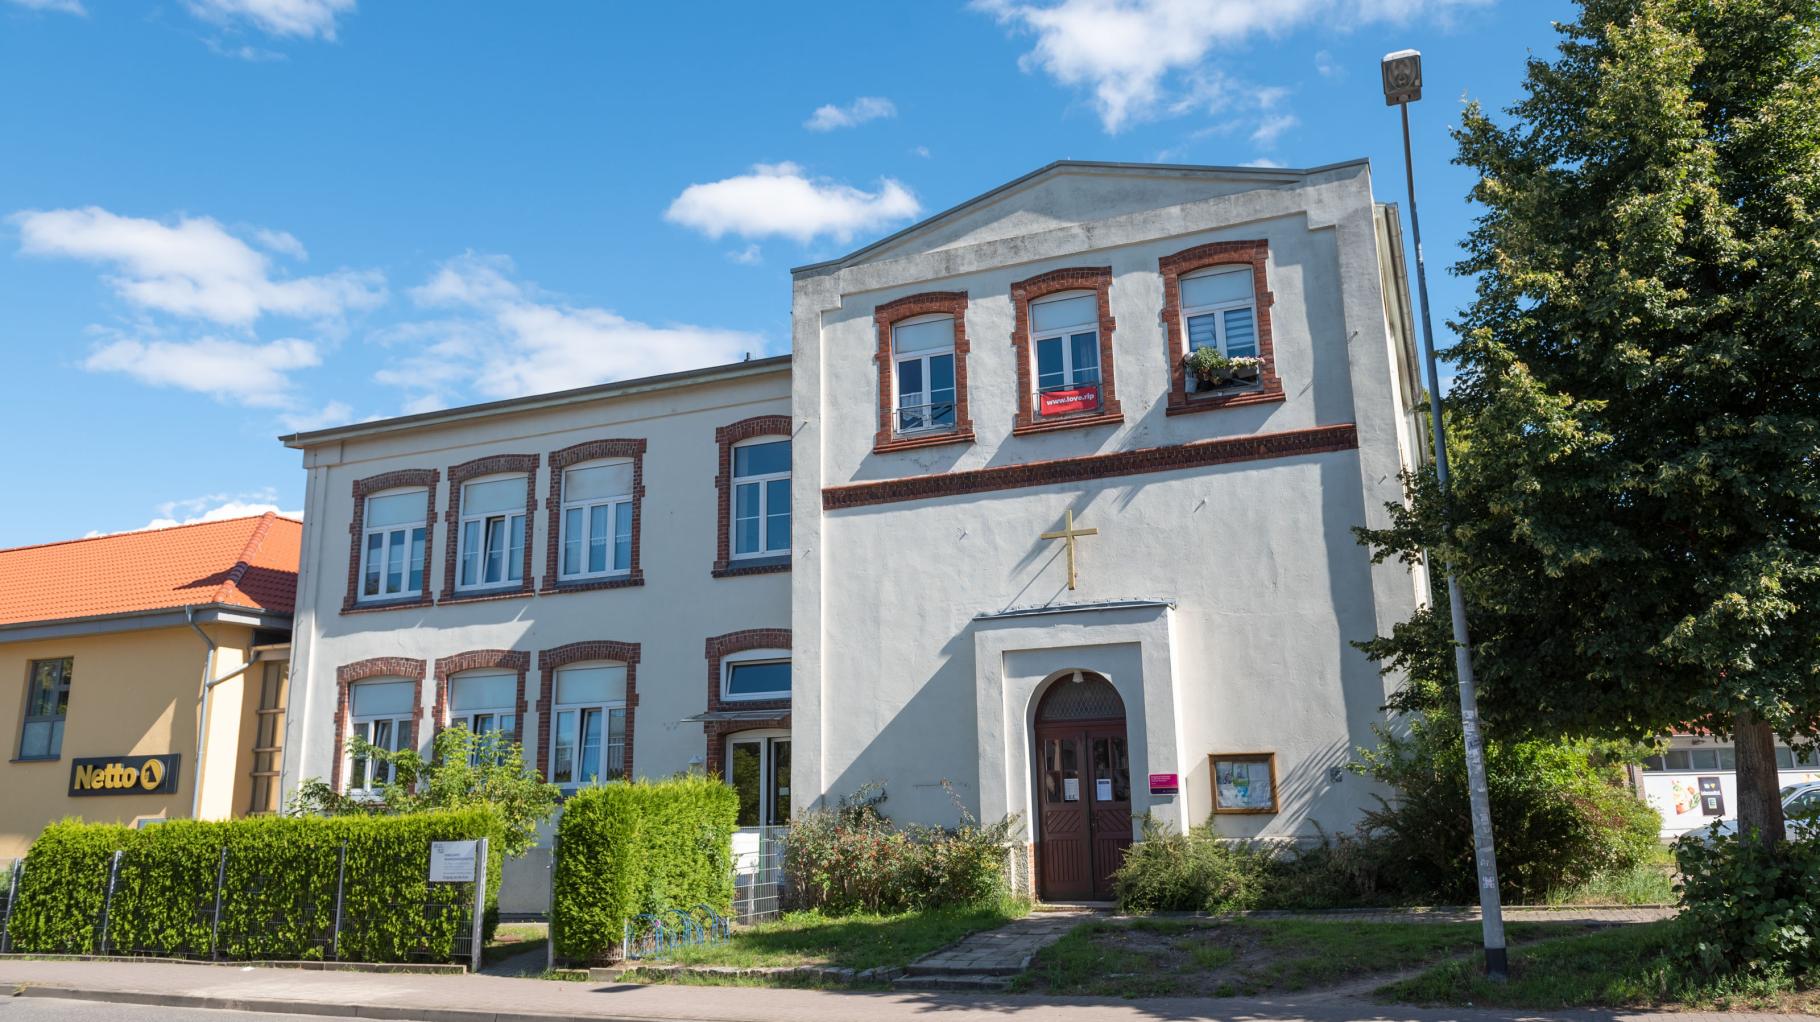 Gehlsdorfer halten Umgestaltung des Kirchenplatzes für voreilig